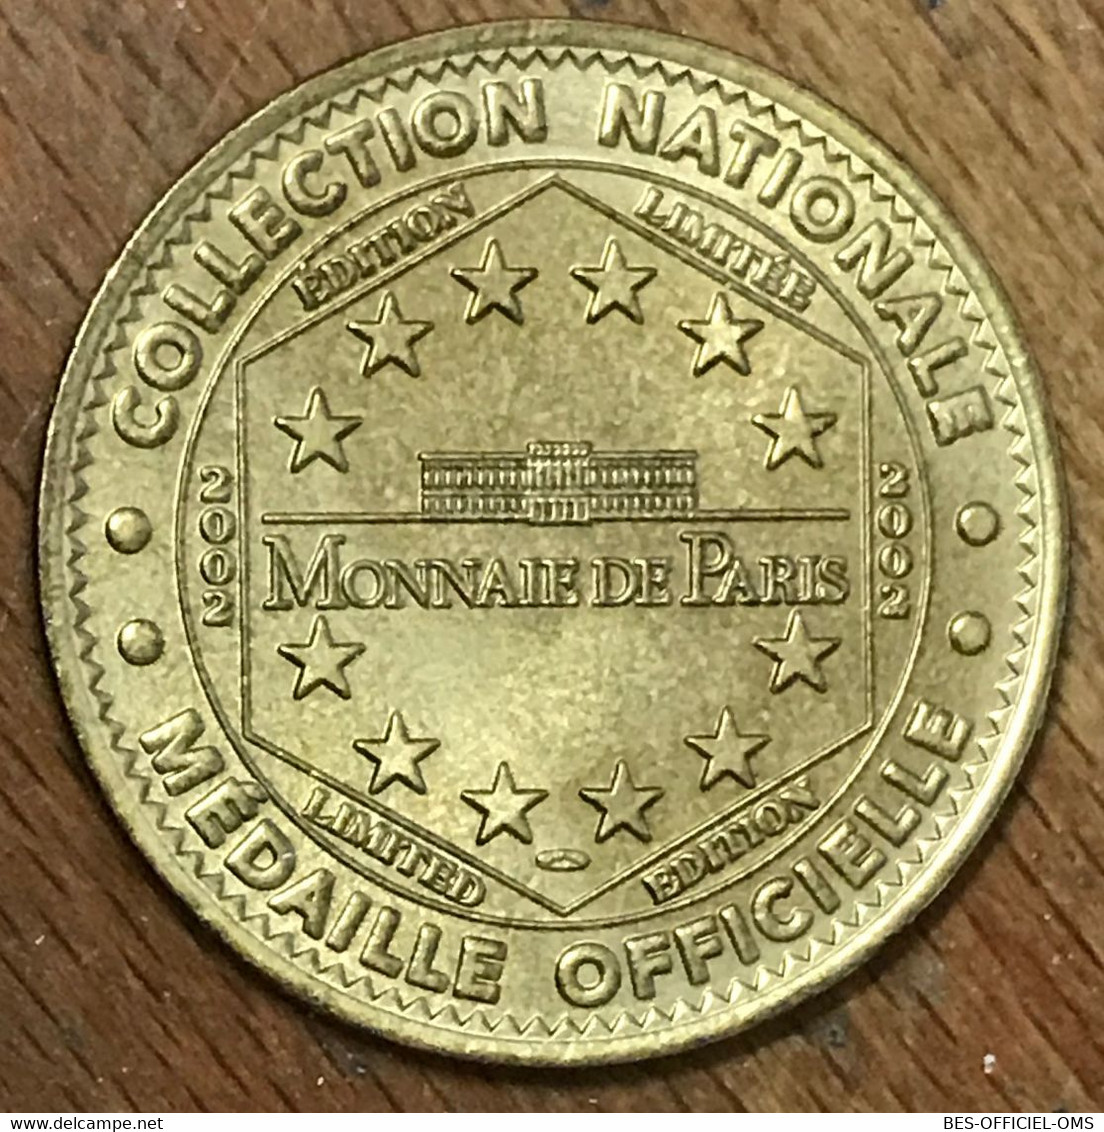 37 CHÂTEAU DE VILLANDRY MDP 2002 MEDAILLE SOUVENIR MONNAIE DE PARIS JETON TOURISTIQUE MEDALS COINS TOKENS - 2002